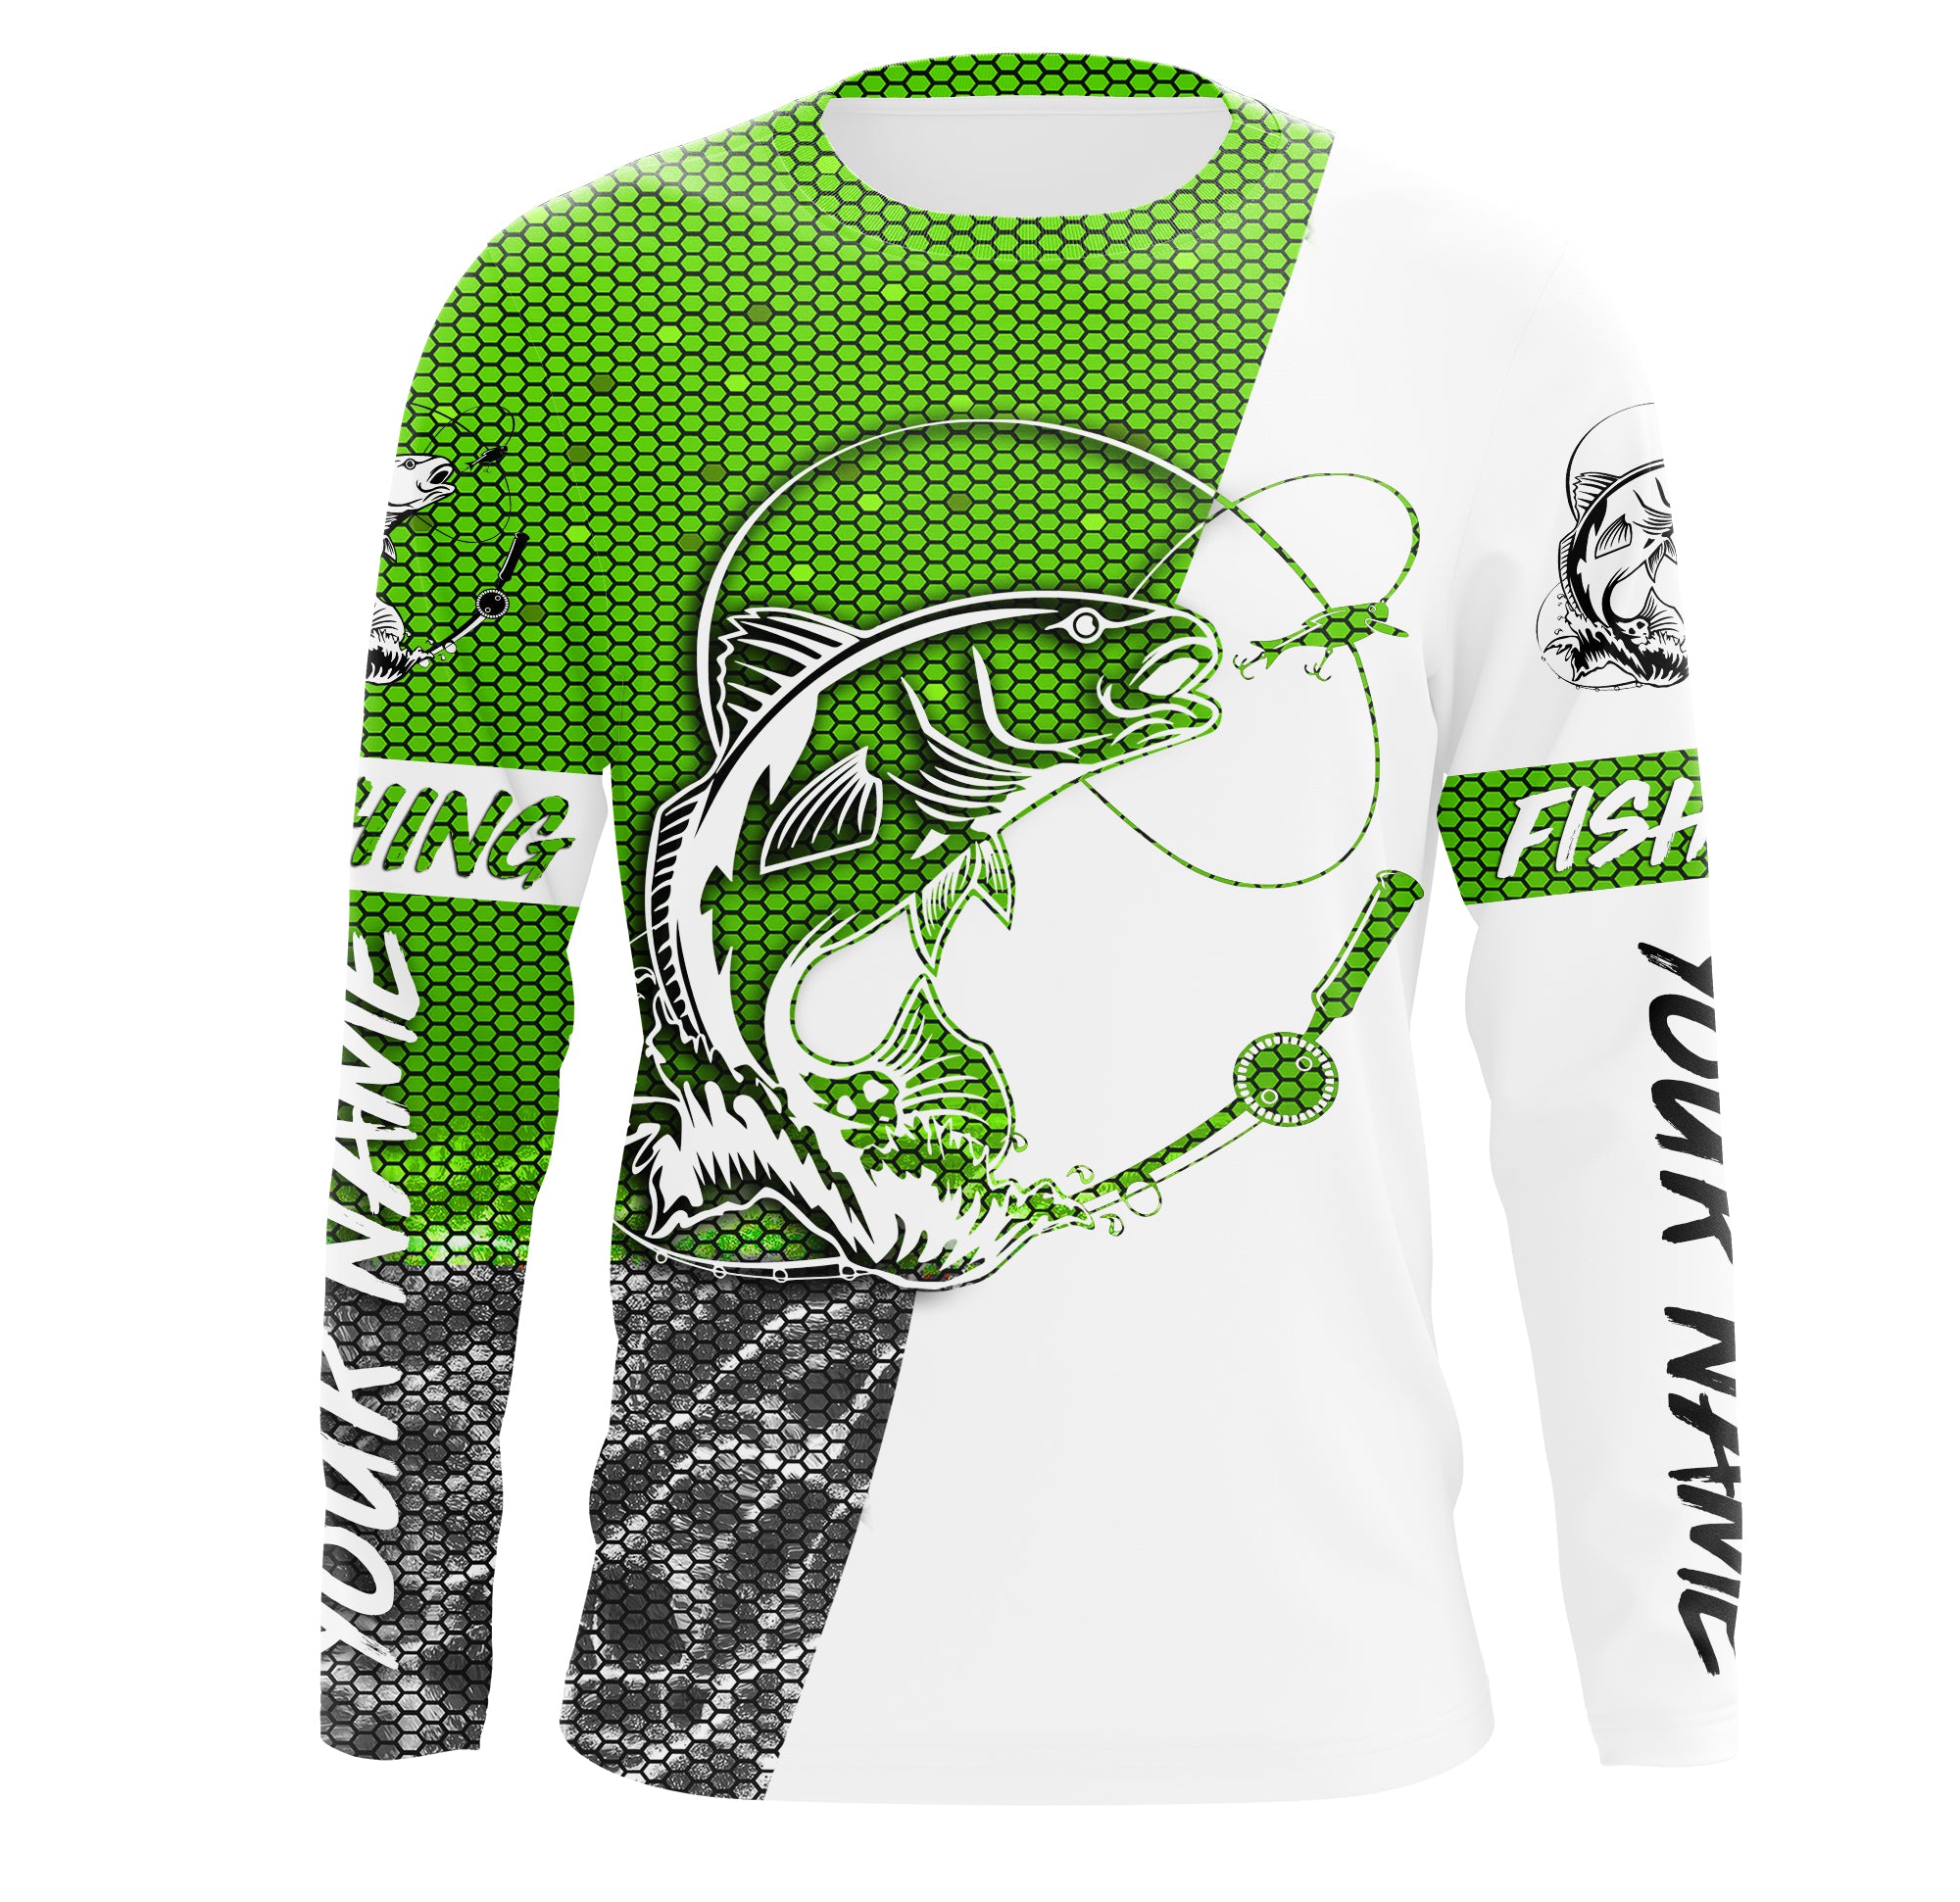 Redfish puppy Drum Custom UV Protection Fishing Shirts, Redfish Fishing jerseys | green - IPHW2411